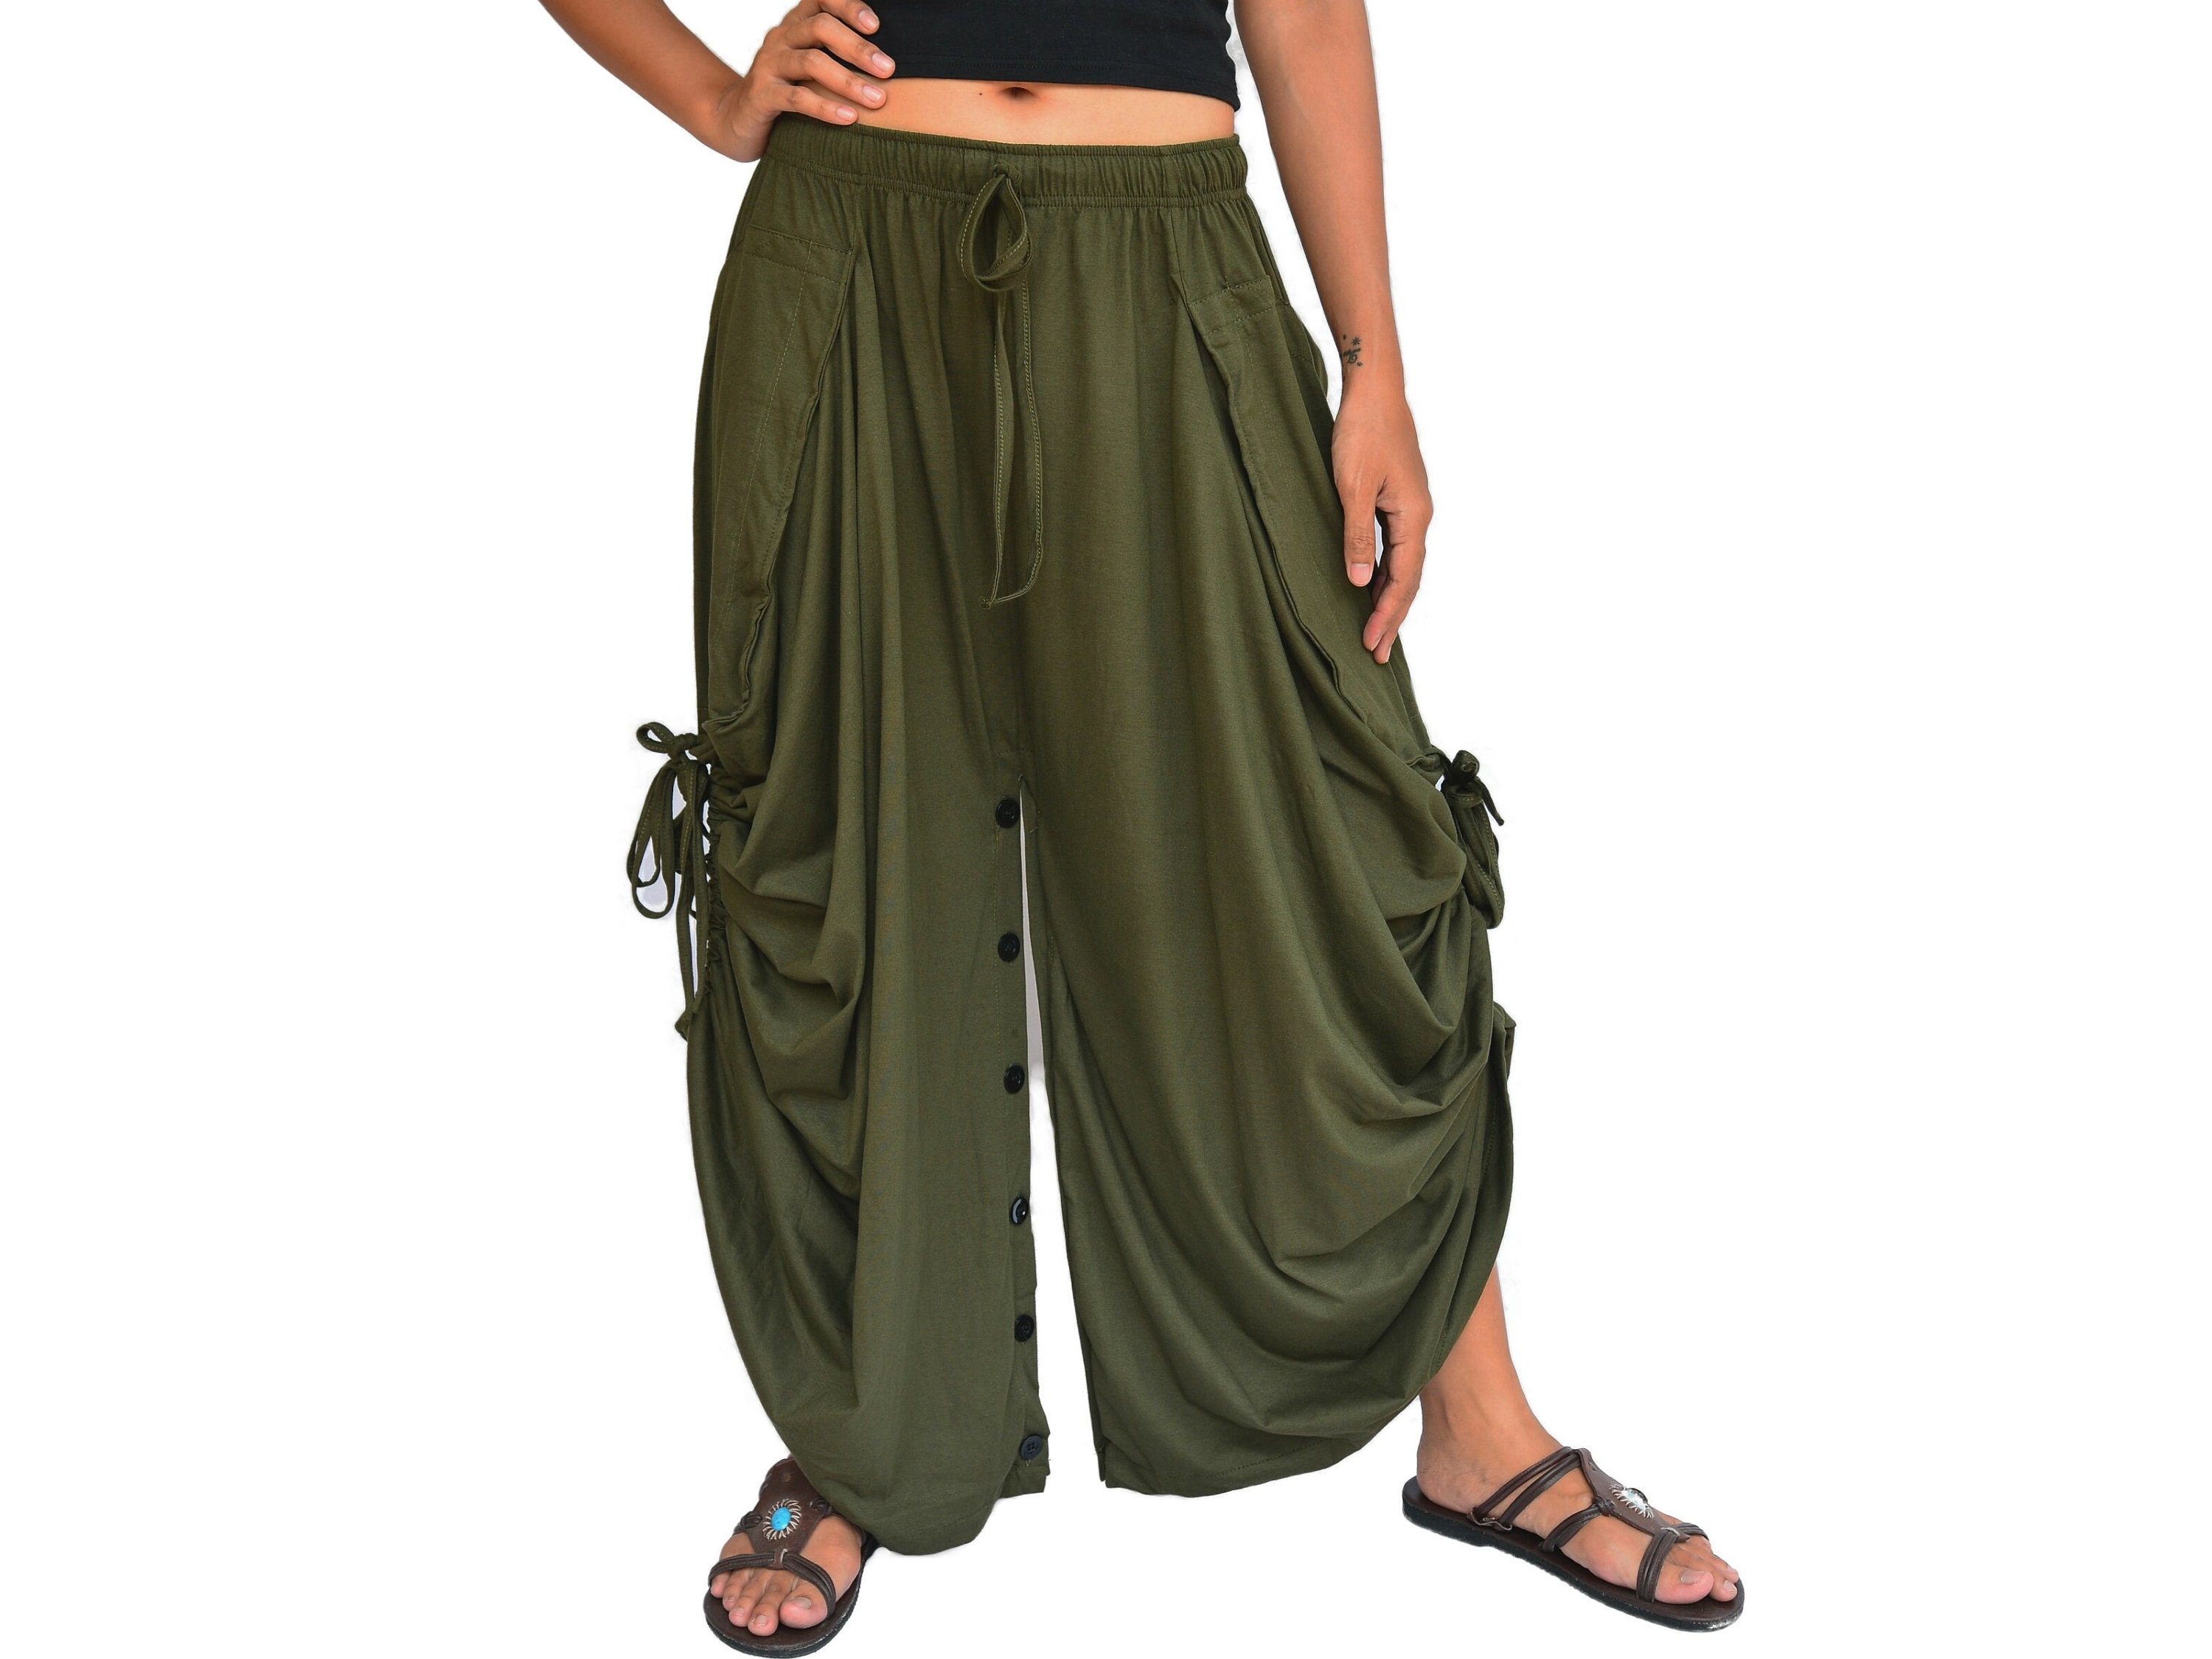 Harem Pants Lounge Pants Men Women Yoga Pants – Sakoonee